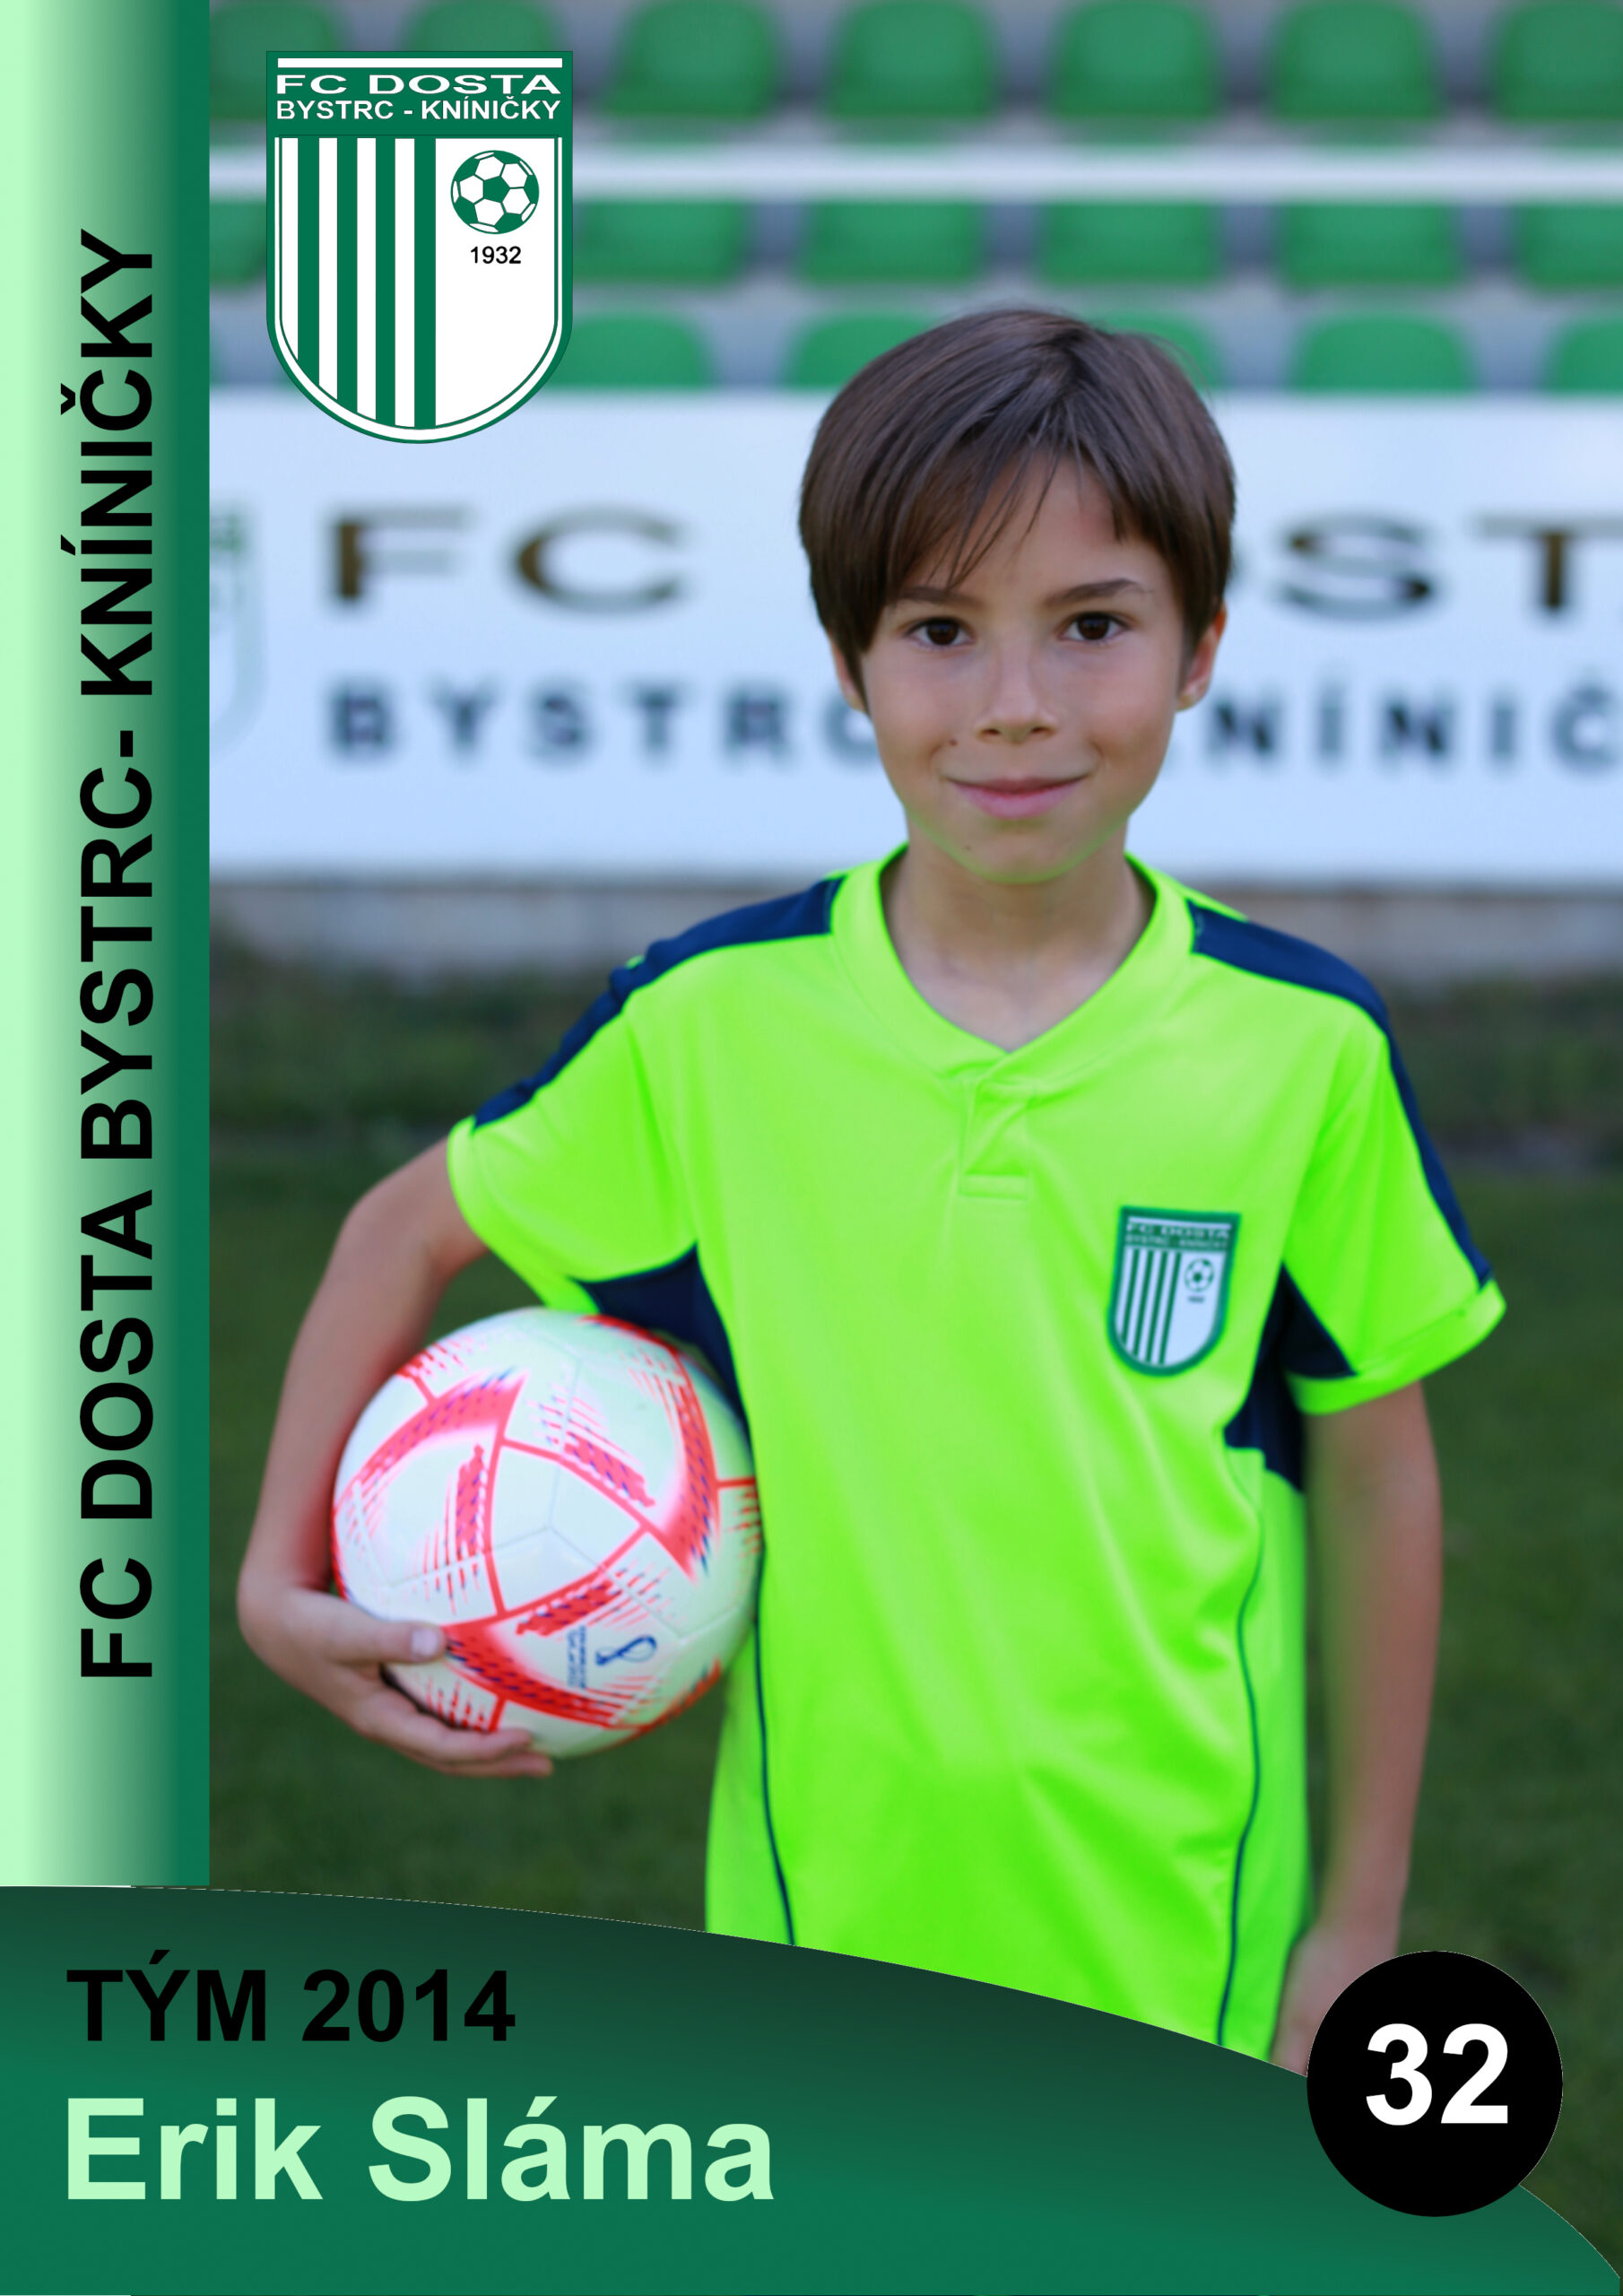 FC Dosta Bystrc - Kníničky Elementor #5153